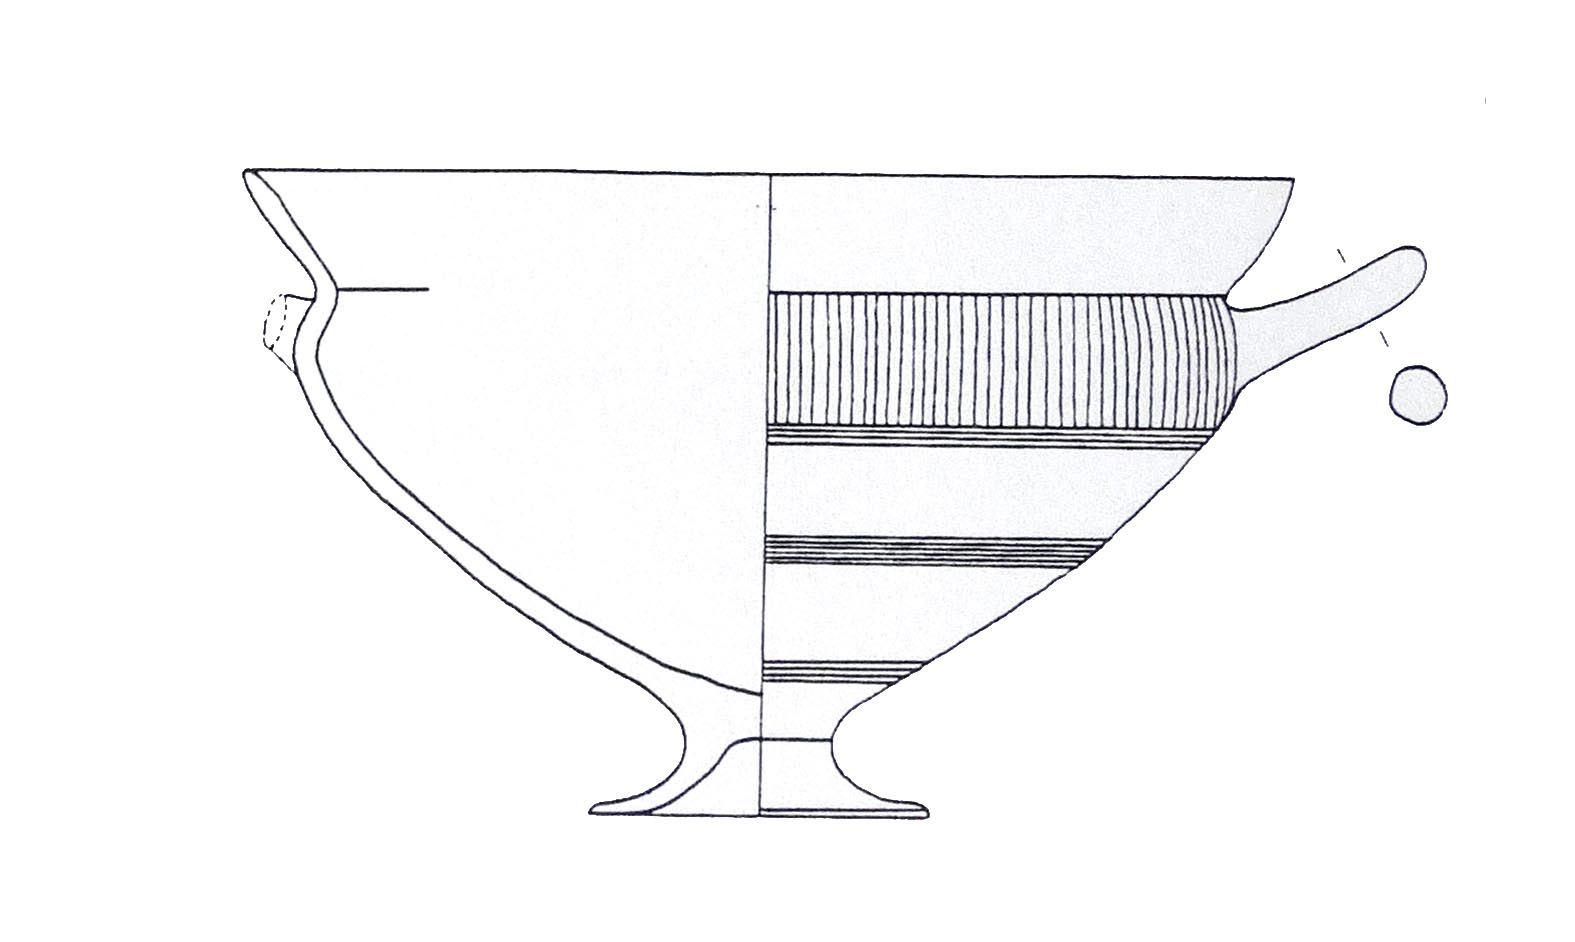 kylix, Rasmussen 3b - ambito etrusco meridionale (sec. VII-VI a.C)